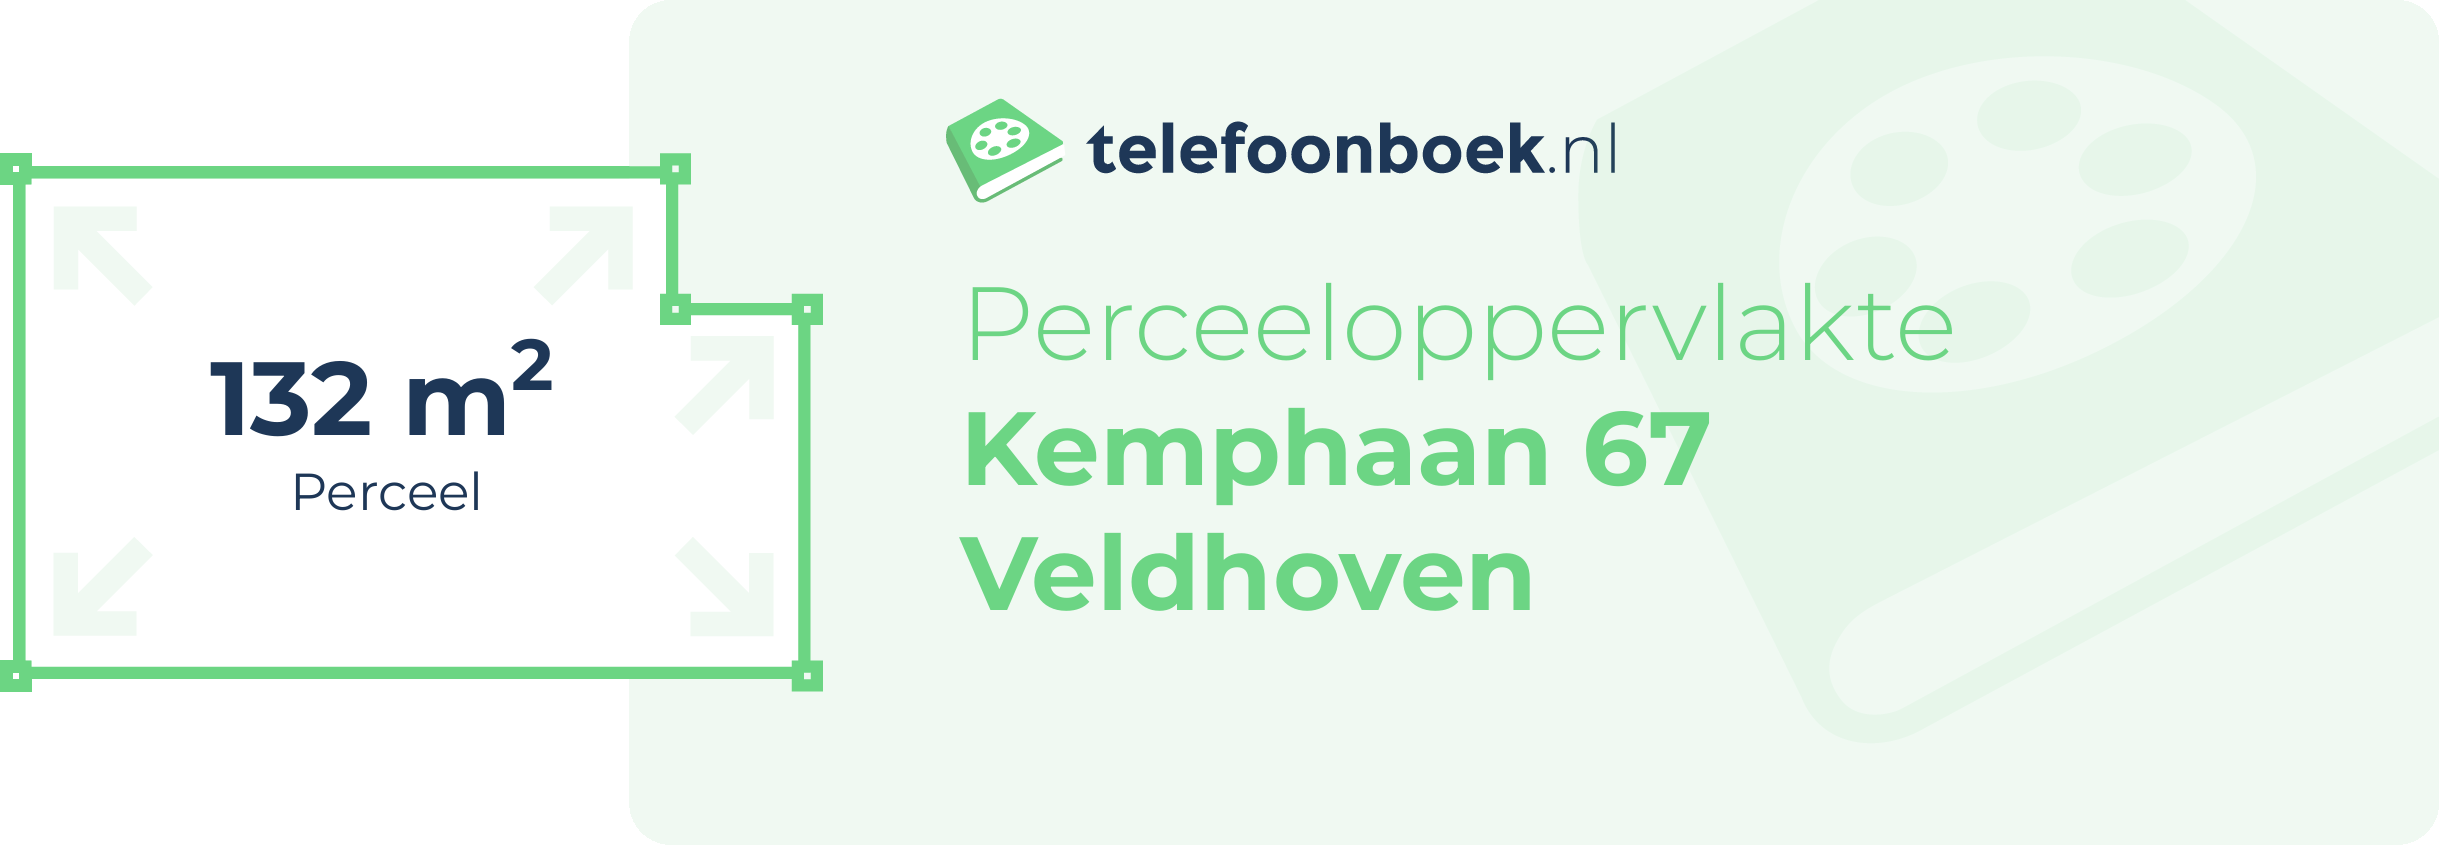 Perceeloppervlakte Kemphaan 67 Veldhoven